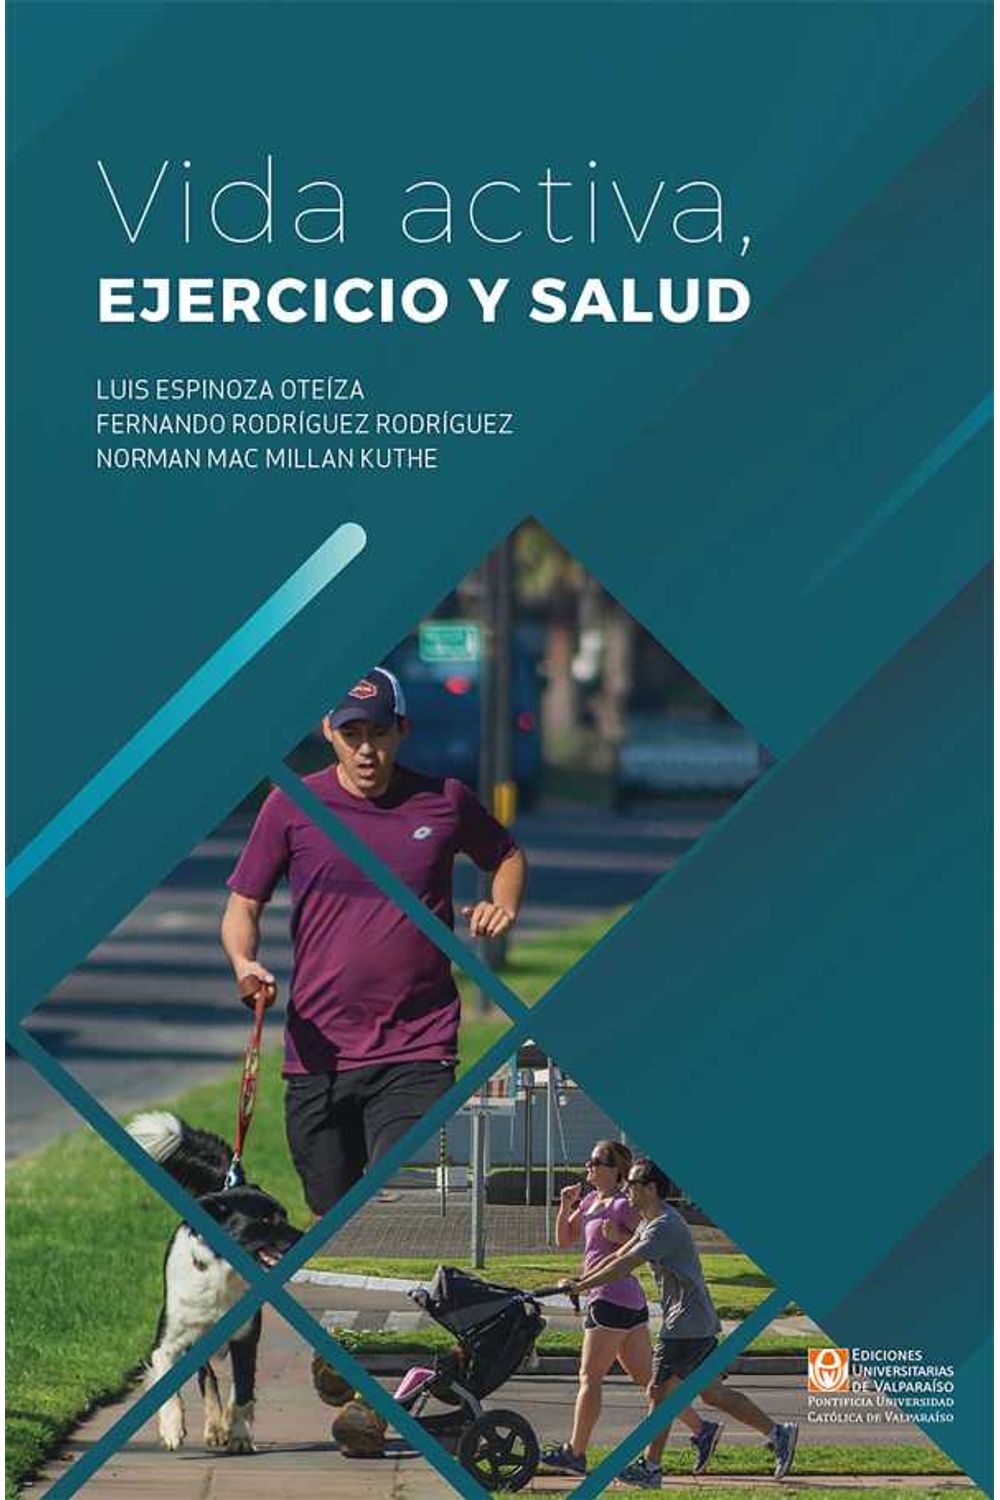 bw-vida-activa-ejercicio-y-salud-ediciones-universitarias-de-valparaso-9789561709003